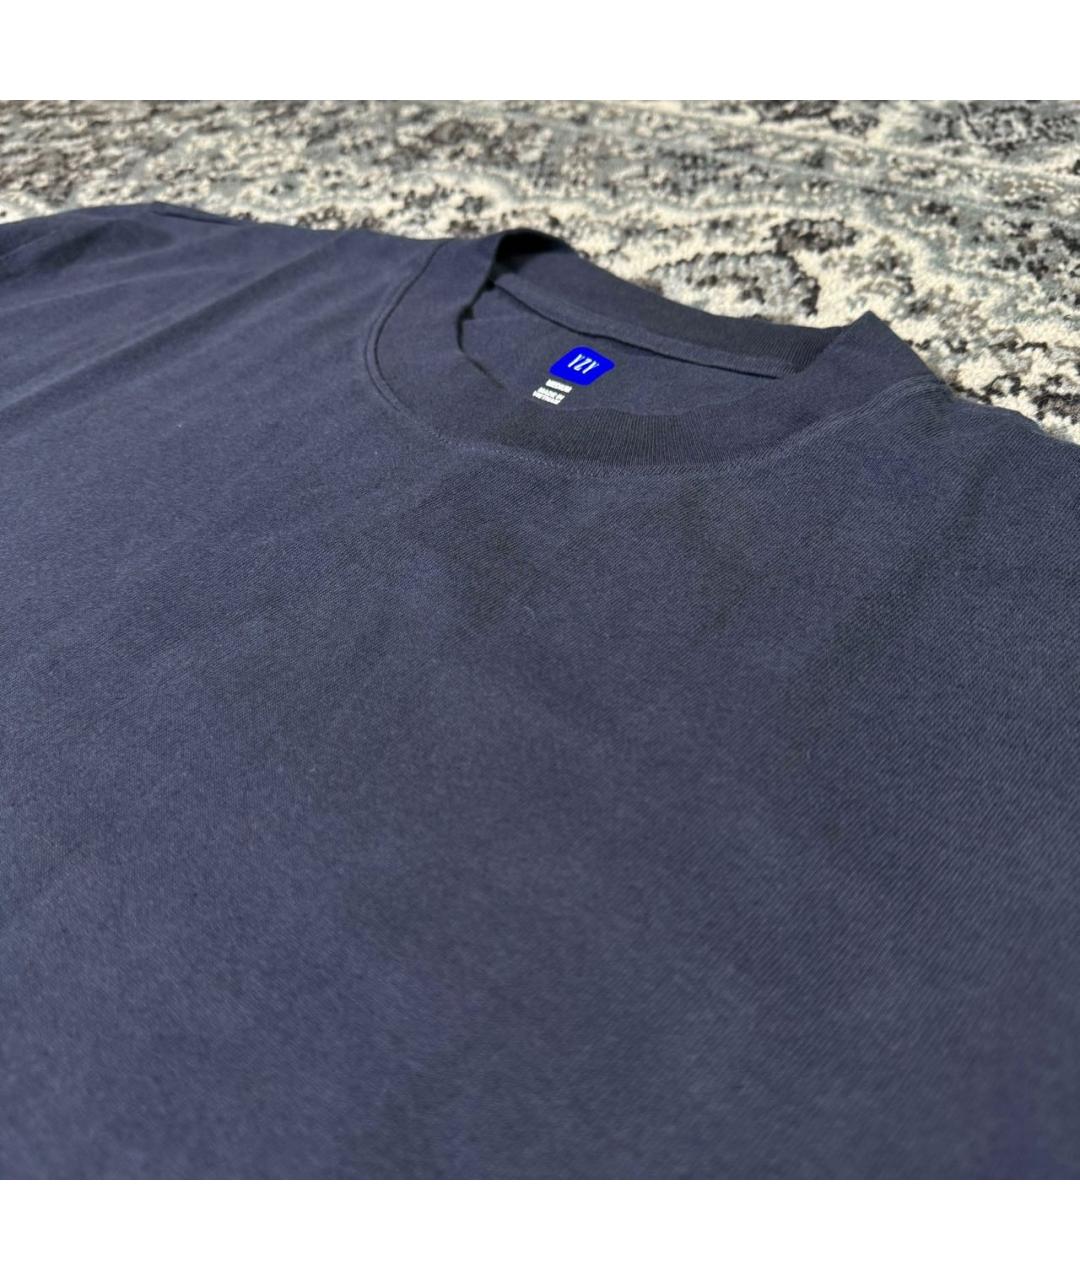 YEEZY Темно-синяя футболка, фото 2